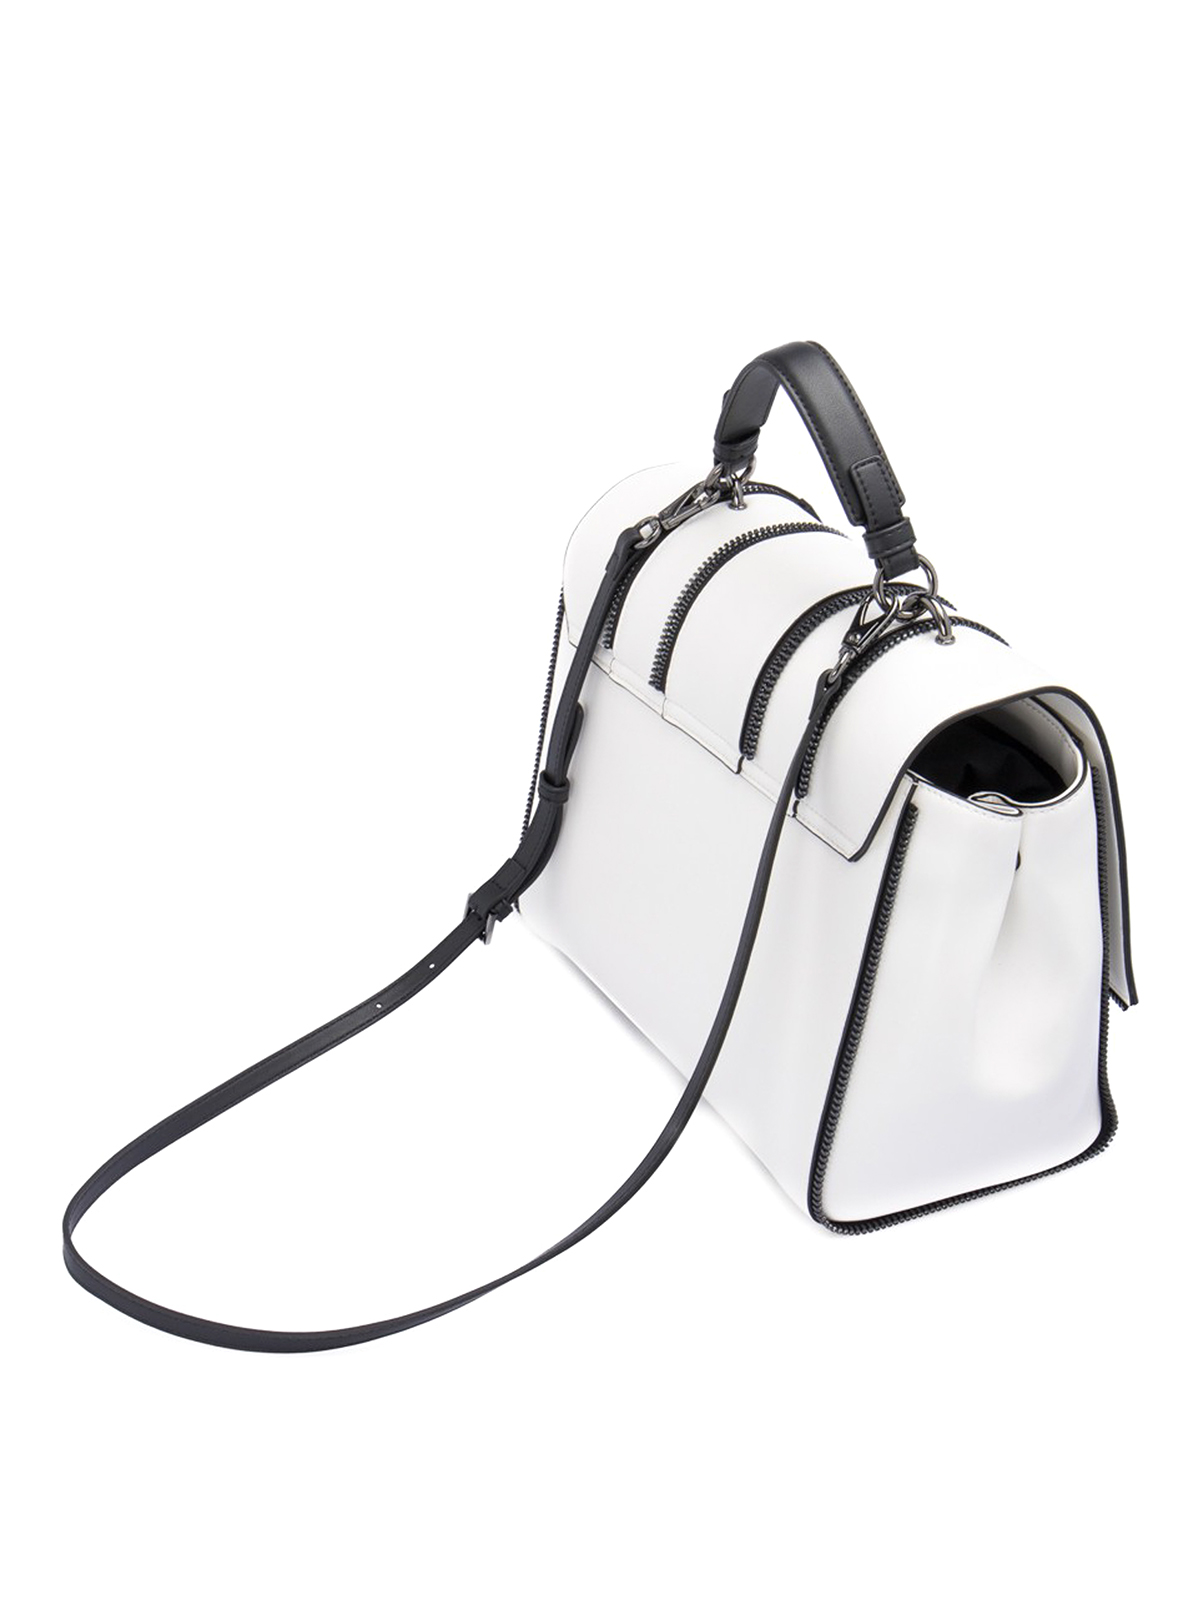 2pcs Loose Leaf Notepad Zip Bag Decorative Binder Pocket Zip Bag for  Scrapbookin | eBay